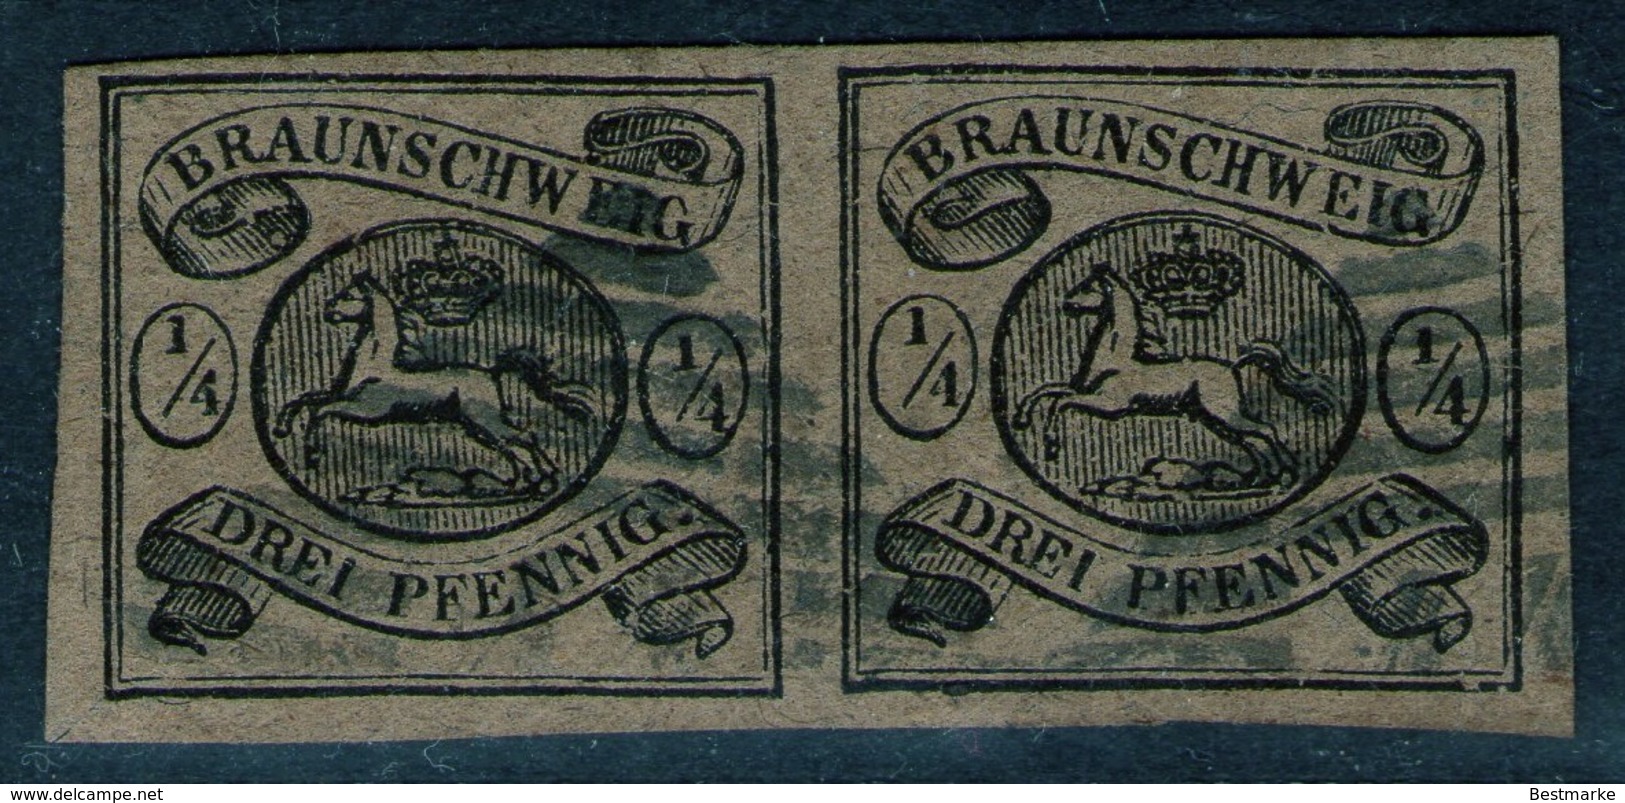 44 Velpke Auf Paar 1/4 Gute Groschen Braun - Braunschweig Nr. 4 Mit Abart - Kabinett - Tiefst Geprüft BPP - Brunswick